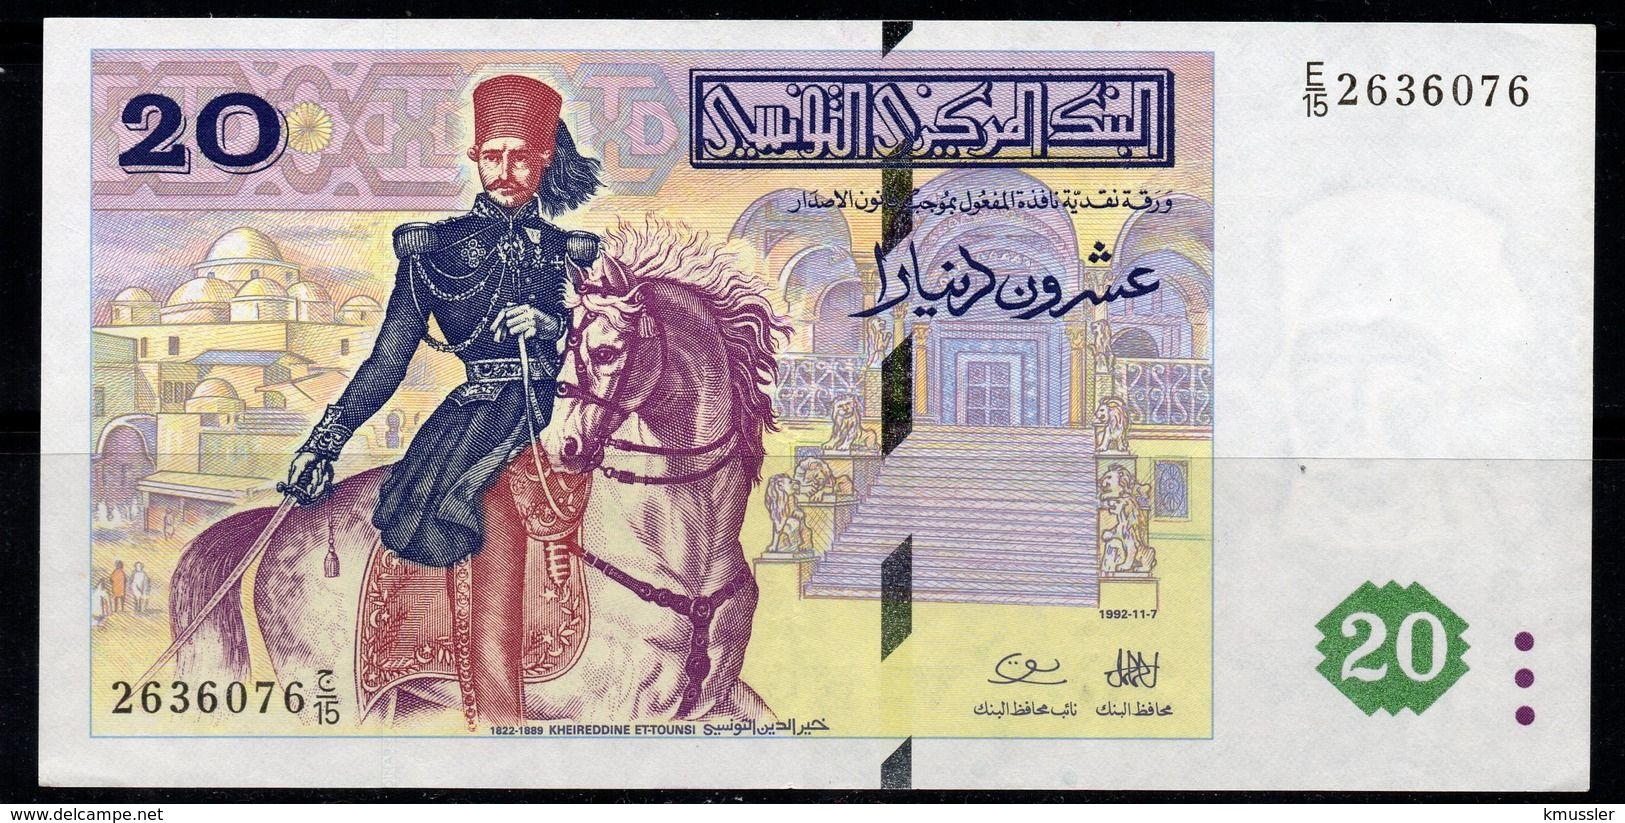 # # # Banknote Tunesien (Tunisia) 20 Dinare 1992 AU # # # - Tunisia